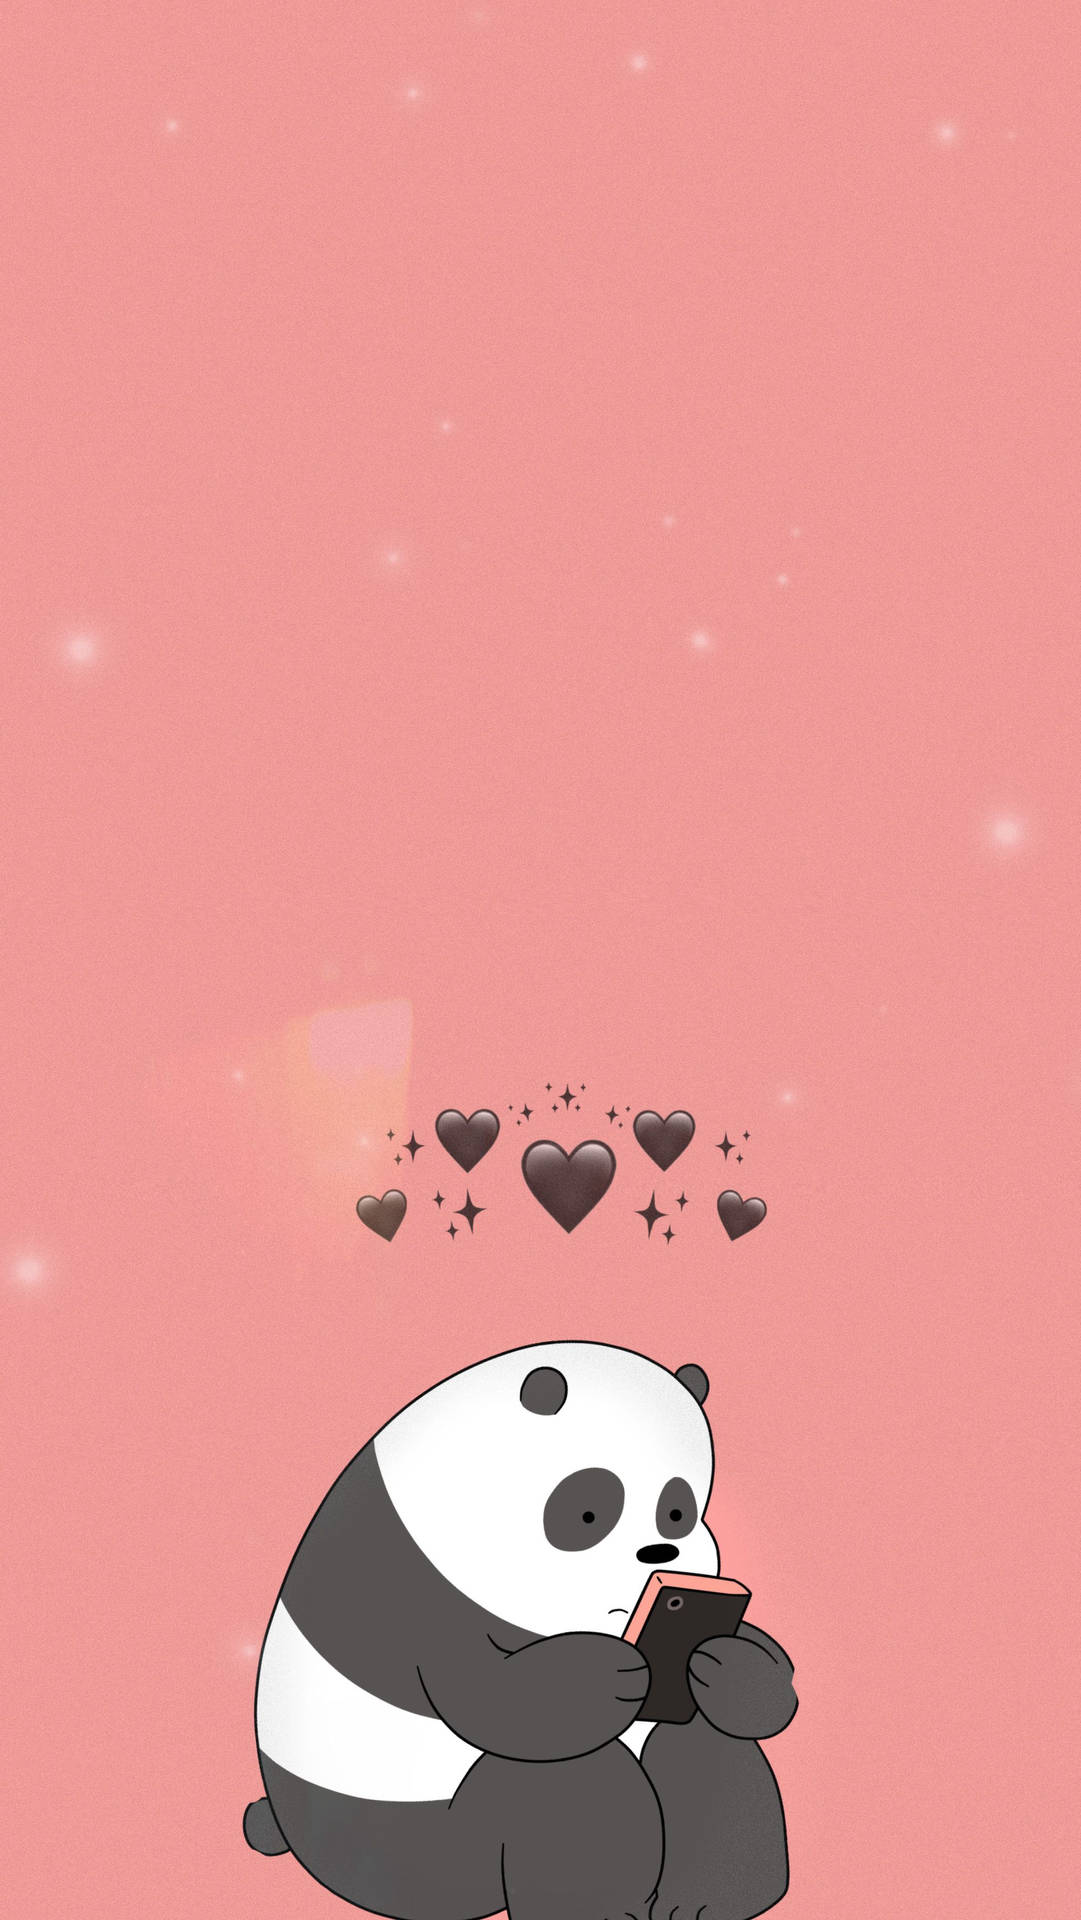 Download Aesthetic Panda Black Hearts Wallpaper